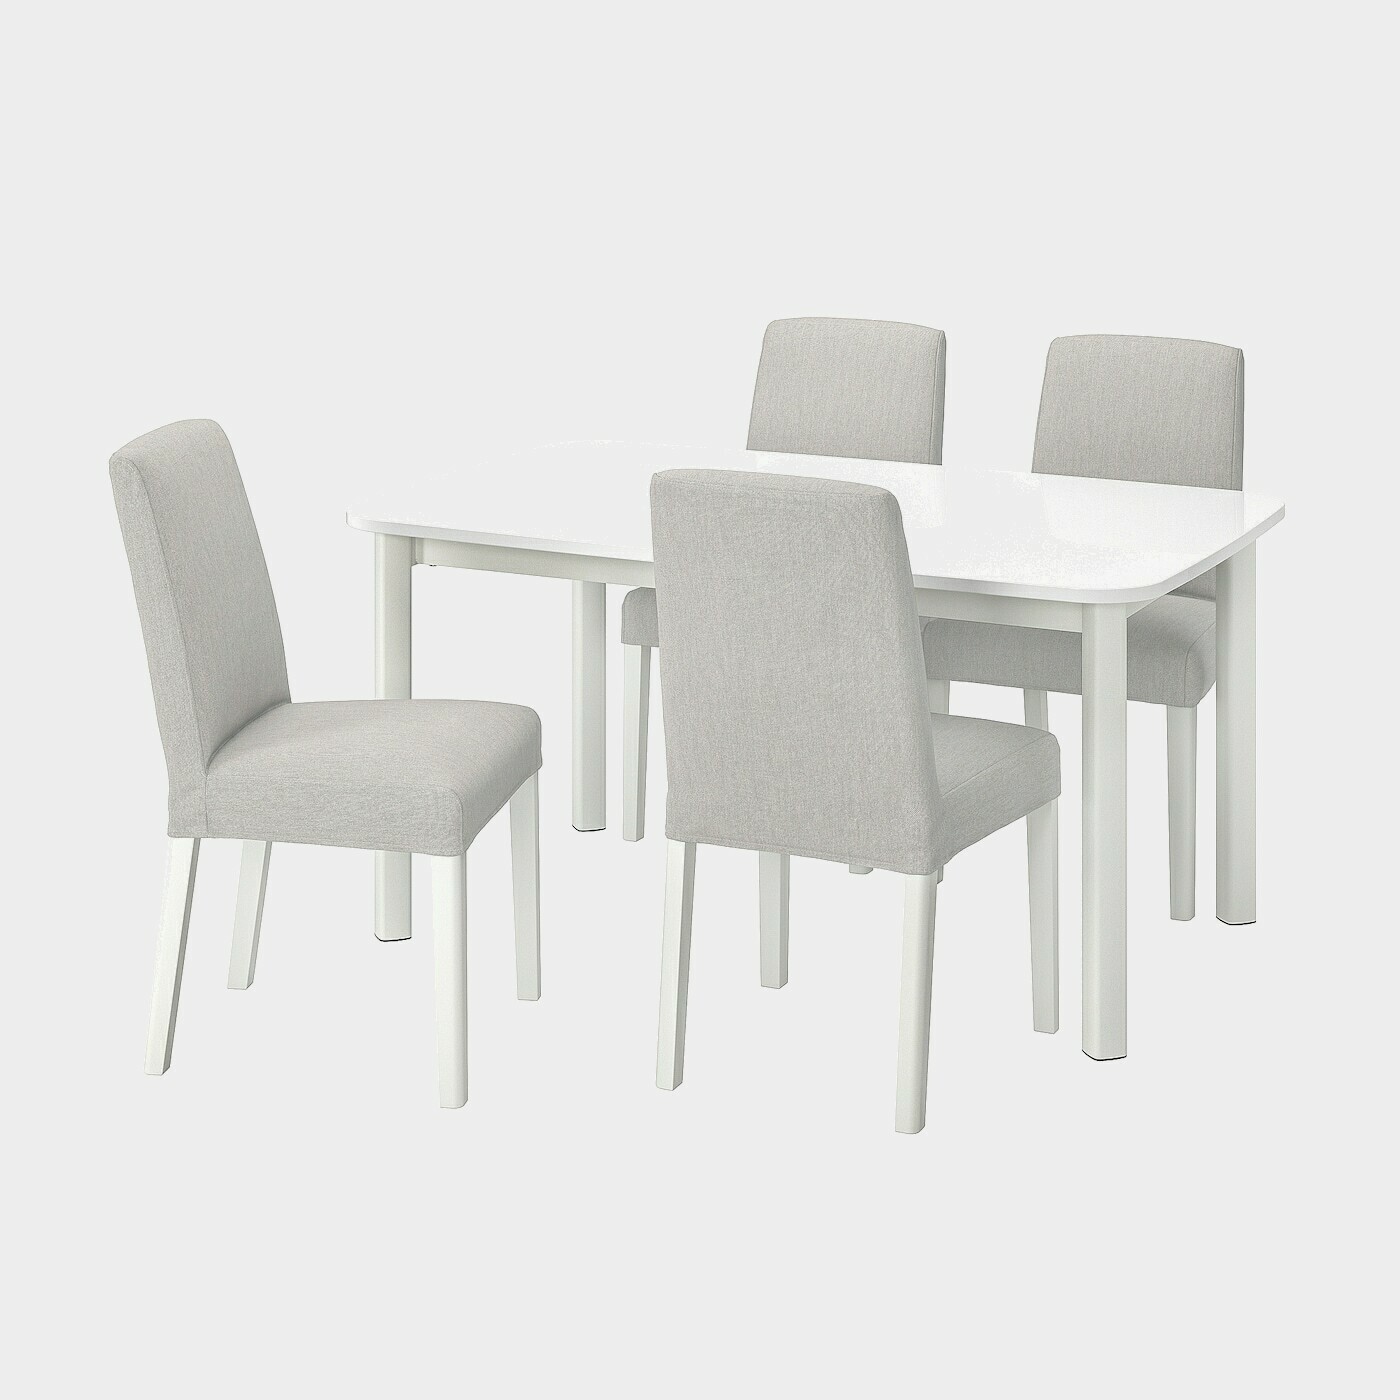 STRANDTORP / BERGMUND Tisch und 4 Stühle  -  - Möbel Ideen für dein Zuhause von Home Trends. Möbel Trends von Social Media Influencer für dein Skandi Zuhause.